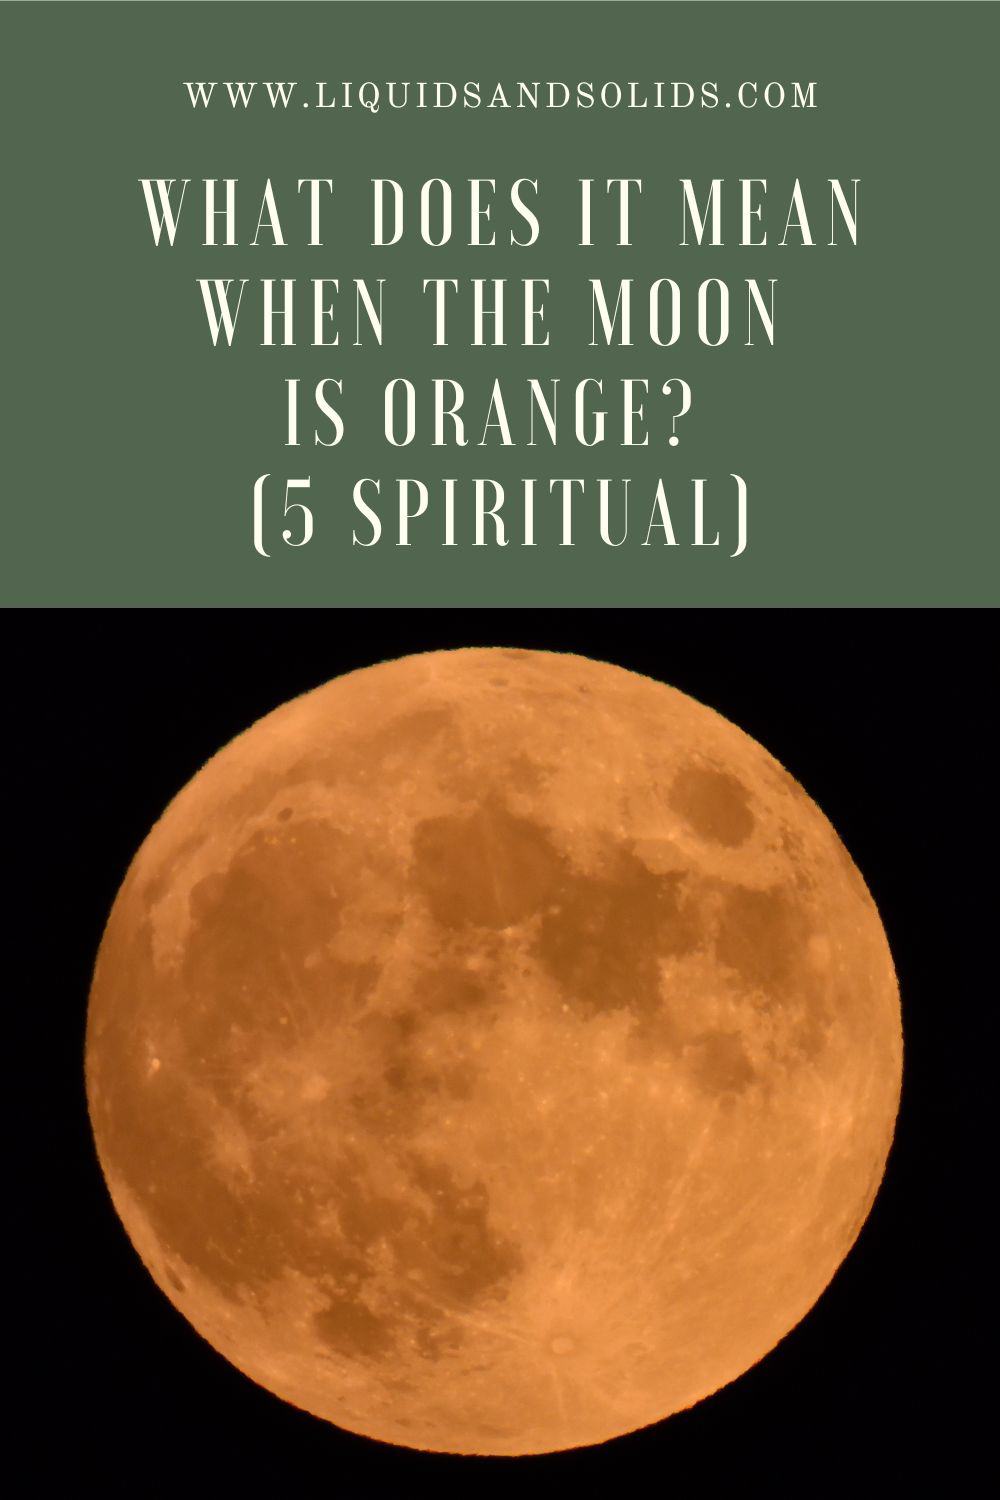  Mit jelent, ha a Hold narancssárga? (5 spirituális jelentés)